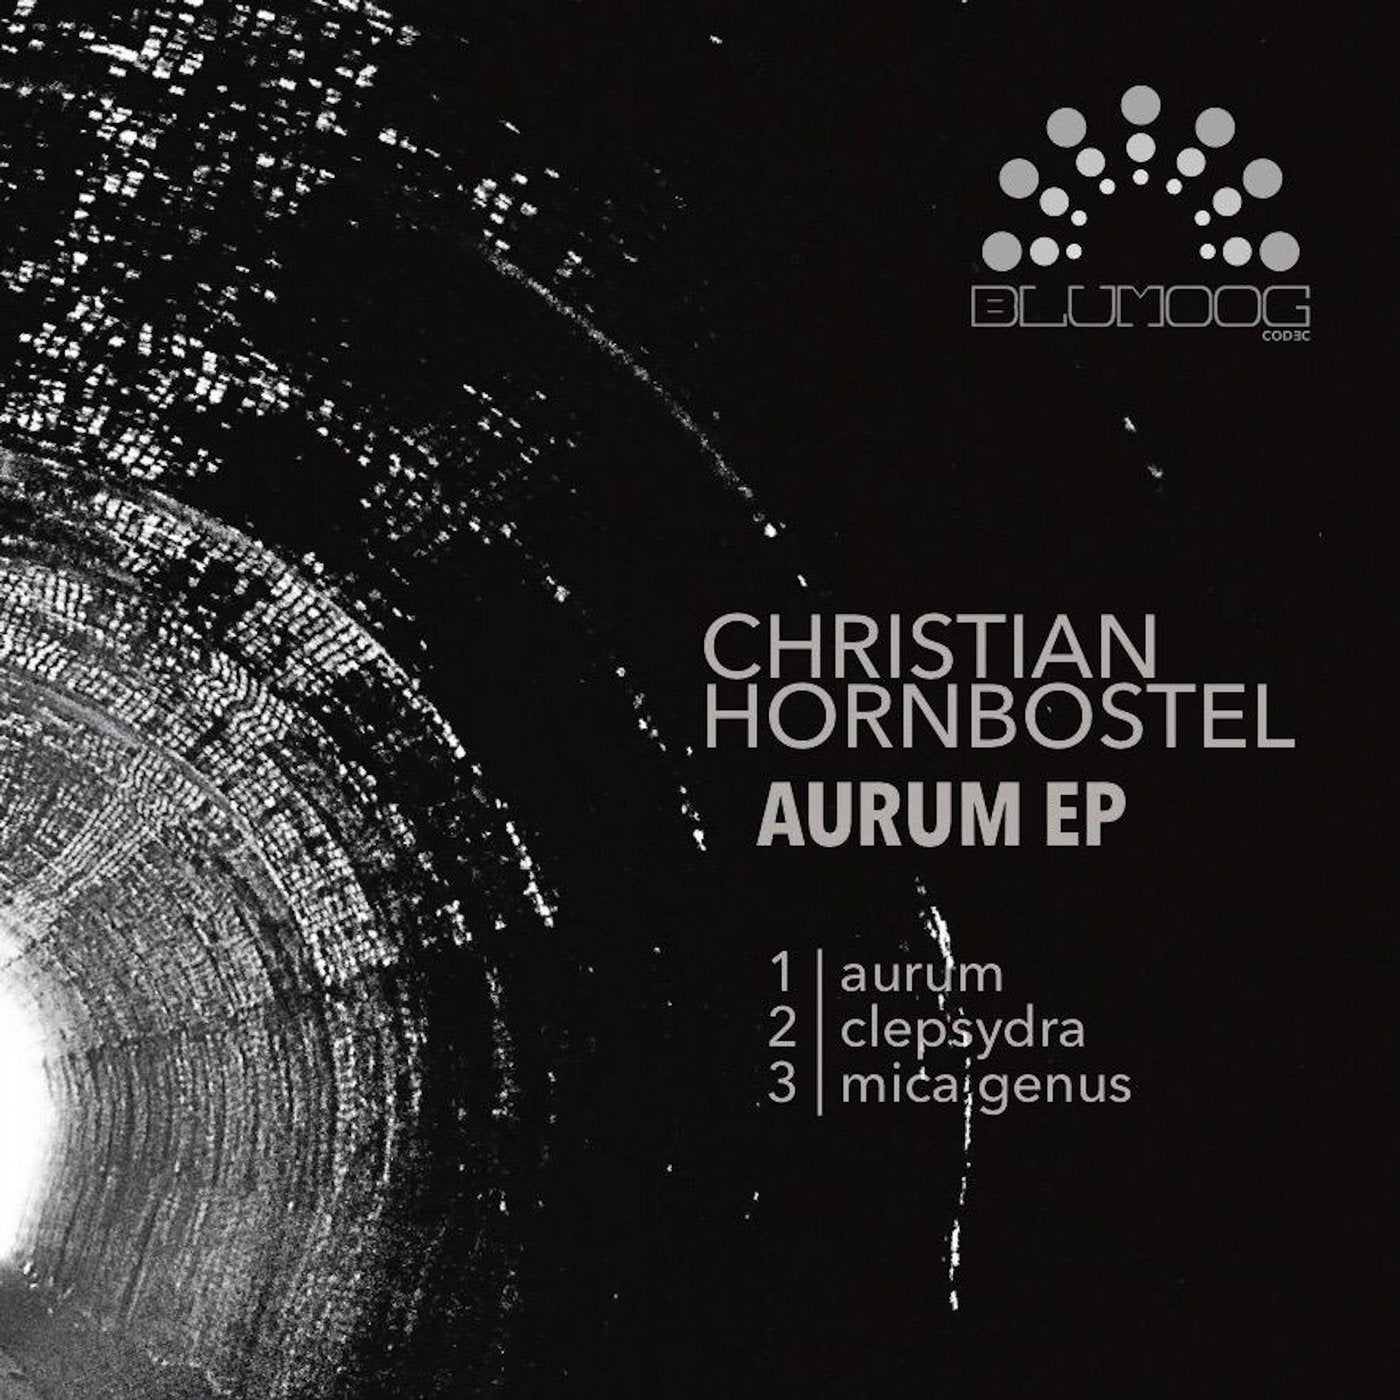 Aurum EP